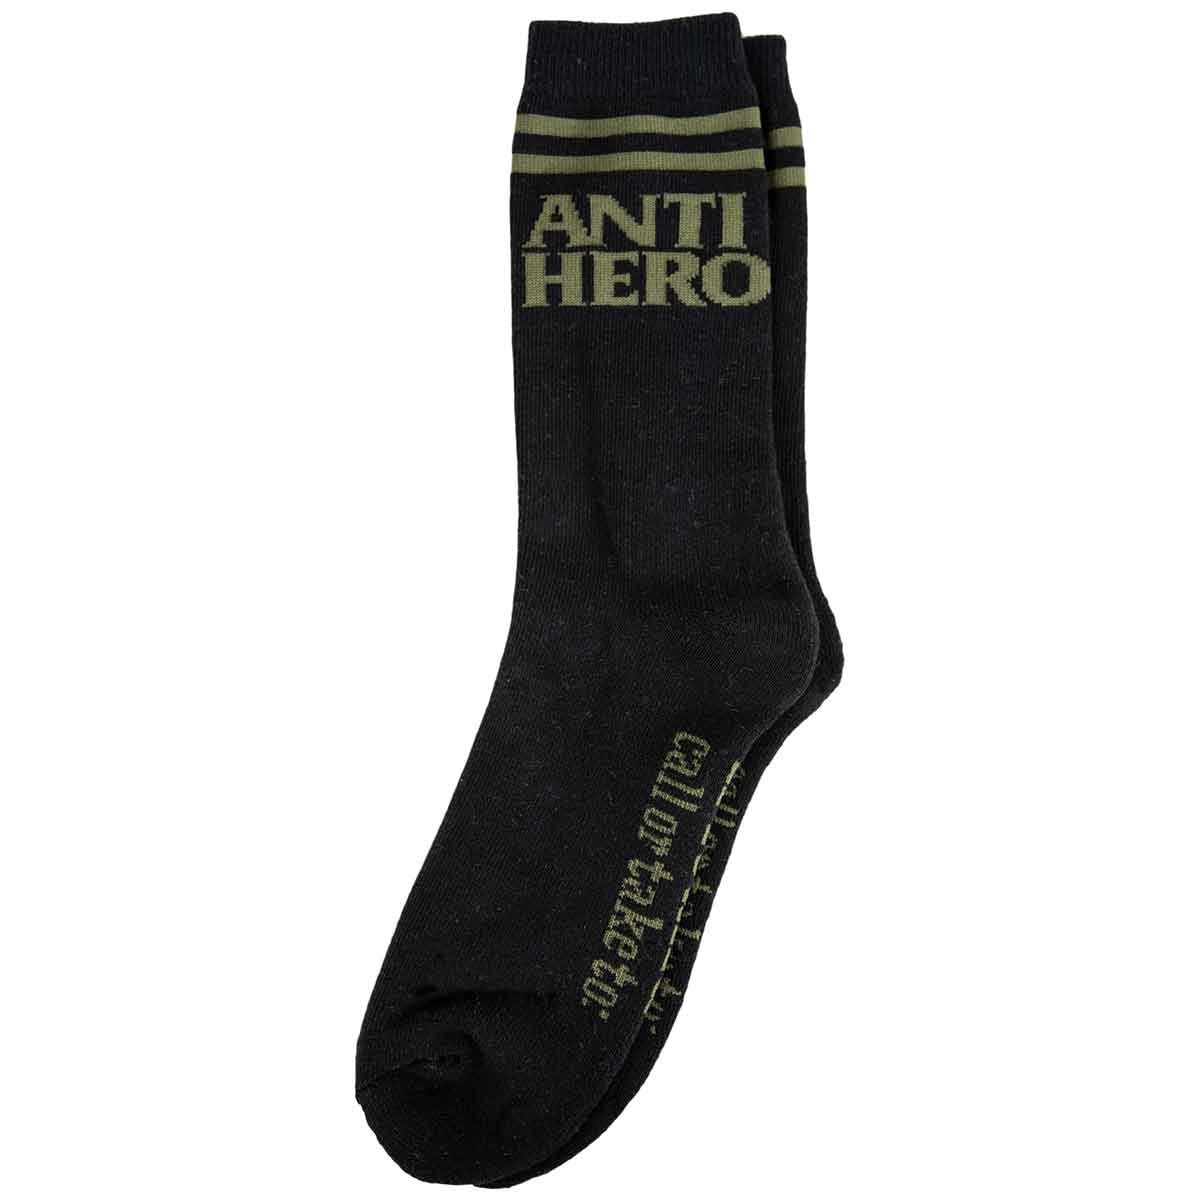 ANTI HERO If Found Flushable Socks (Black/Olive)